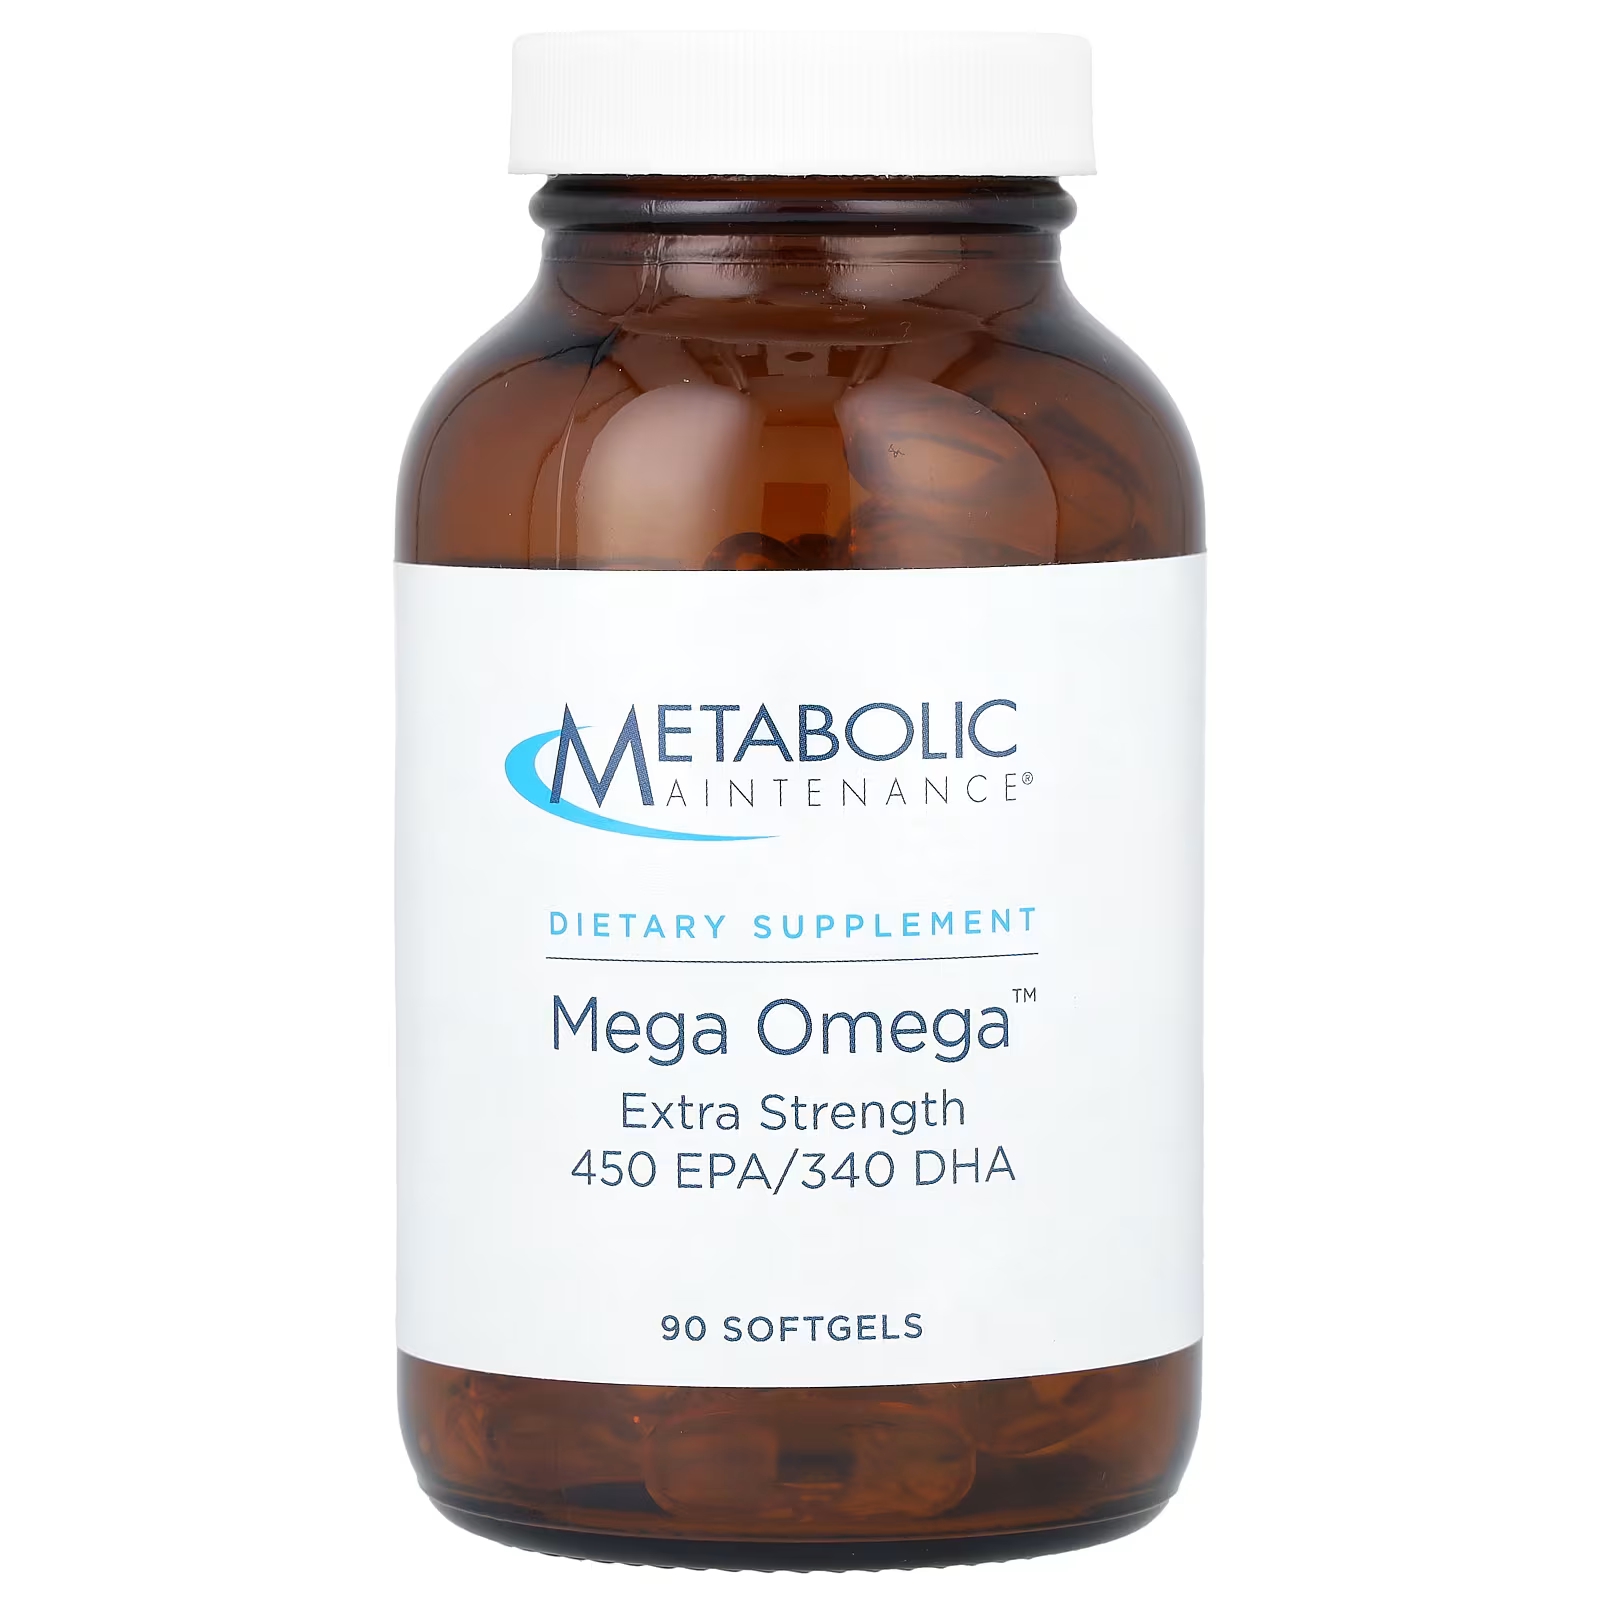 Метаболическое обслуживание Mega Omega Extra Strength, 90 мягких таблеток Metabolic Maintenance метаболическое обслуживание coq10 порошок апельсина 3 9 унции 110 г metabolic maintenance